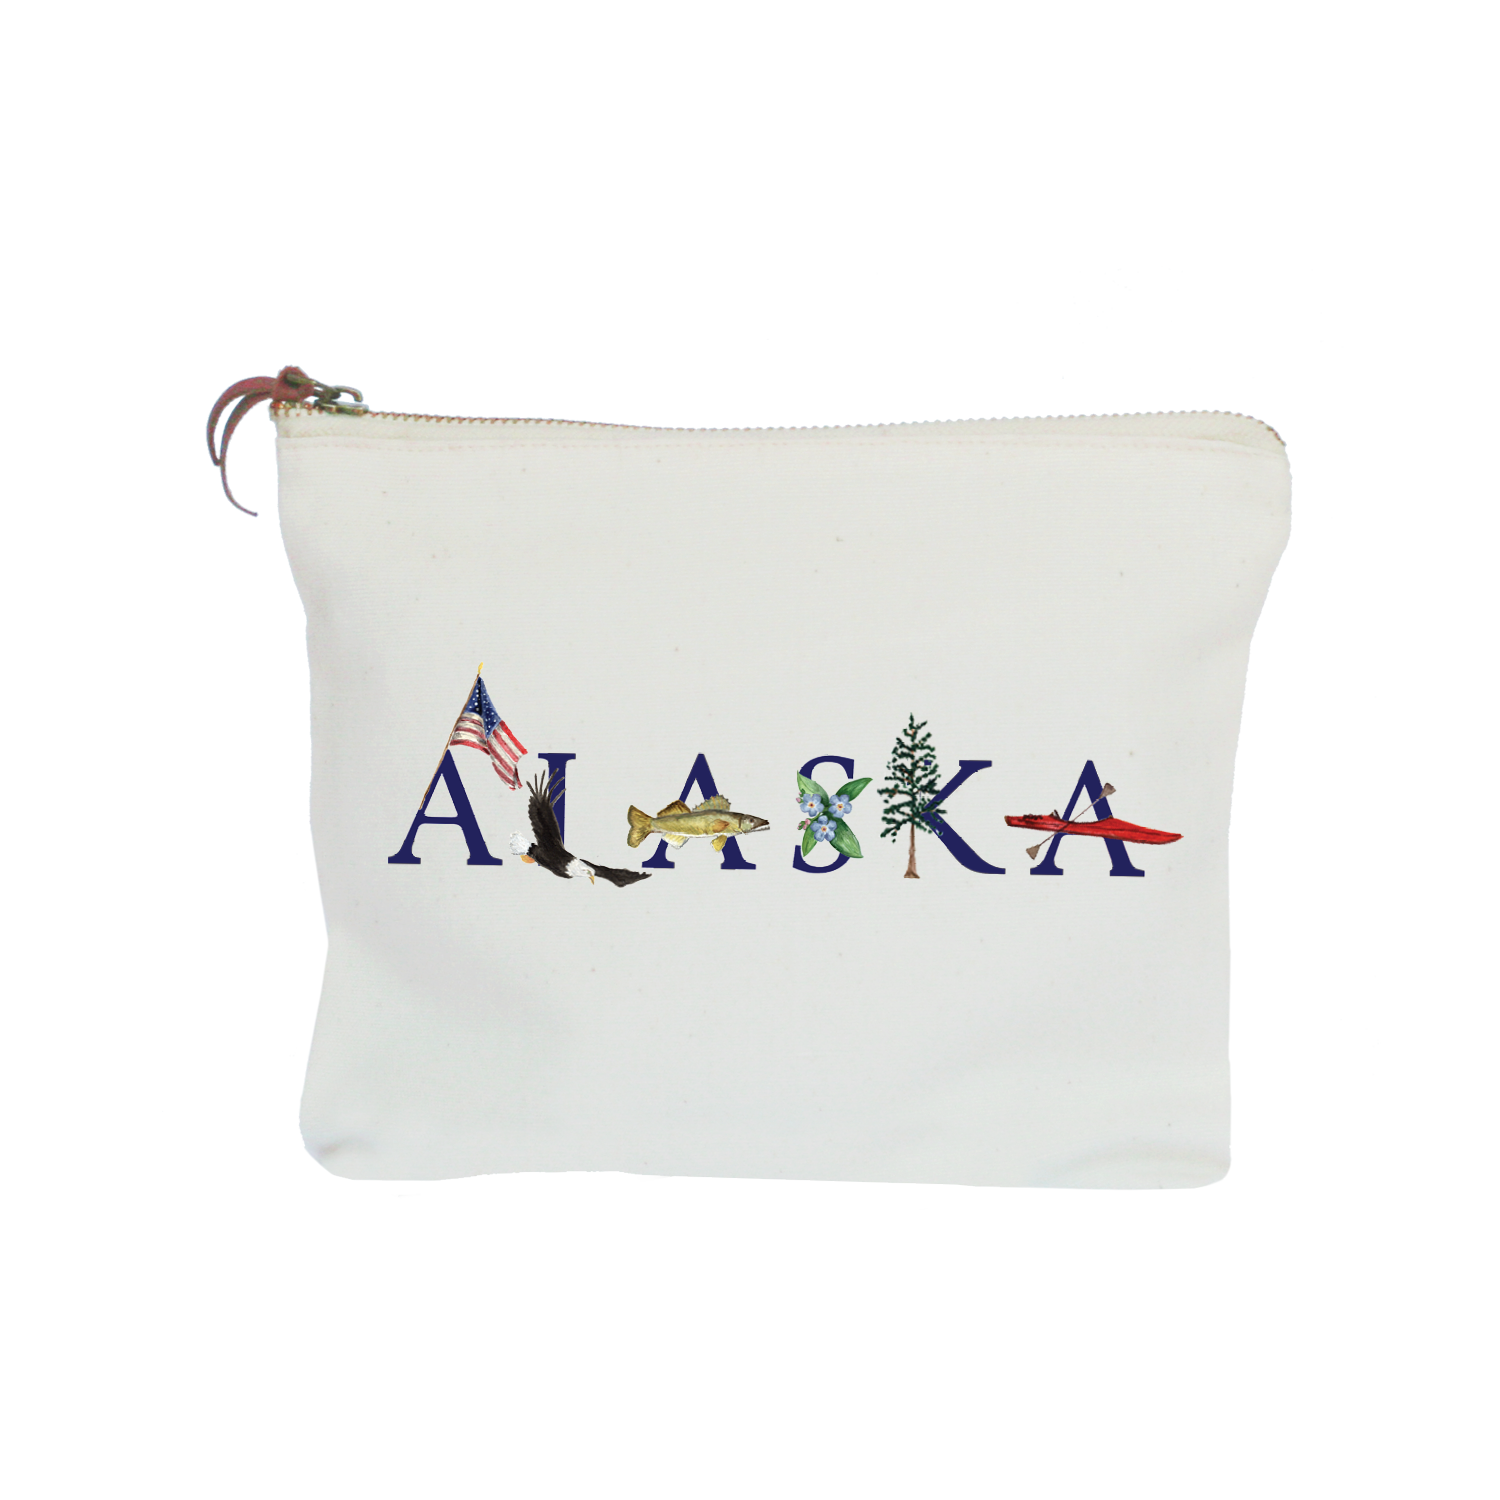 Alaska zipper pouch